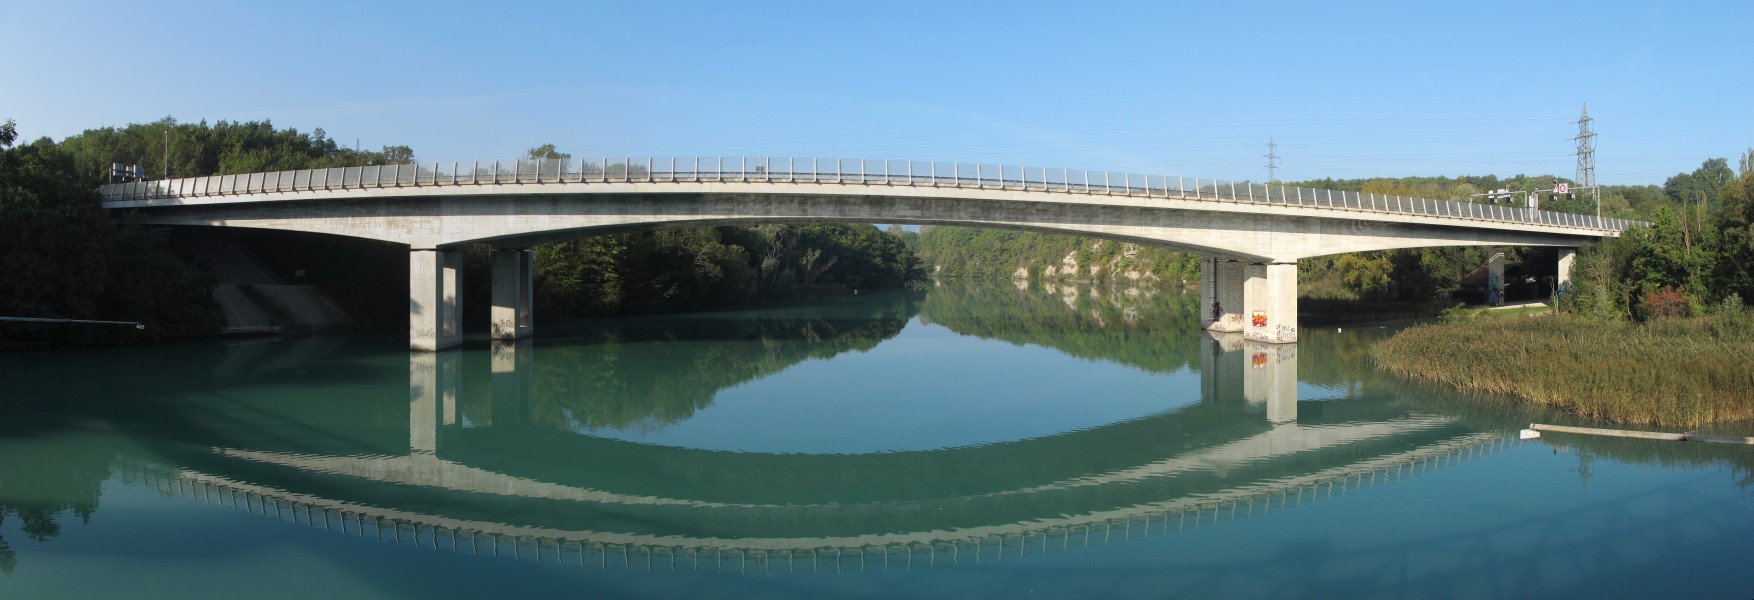 Pont Aigues Vertes02 2014-09-27